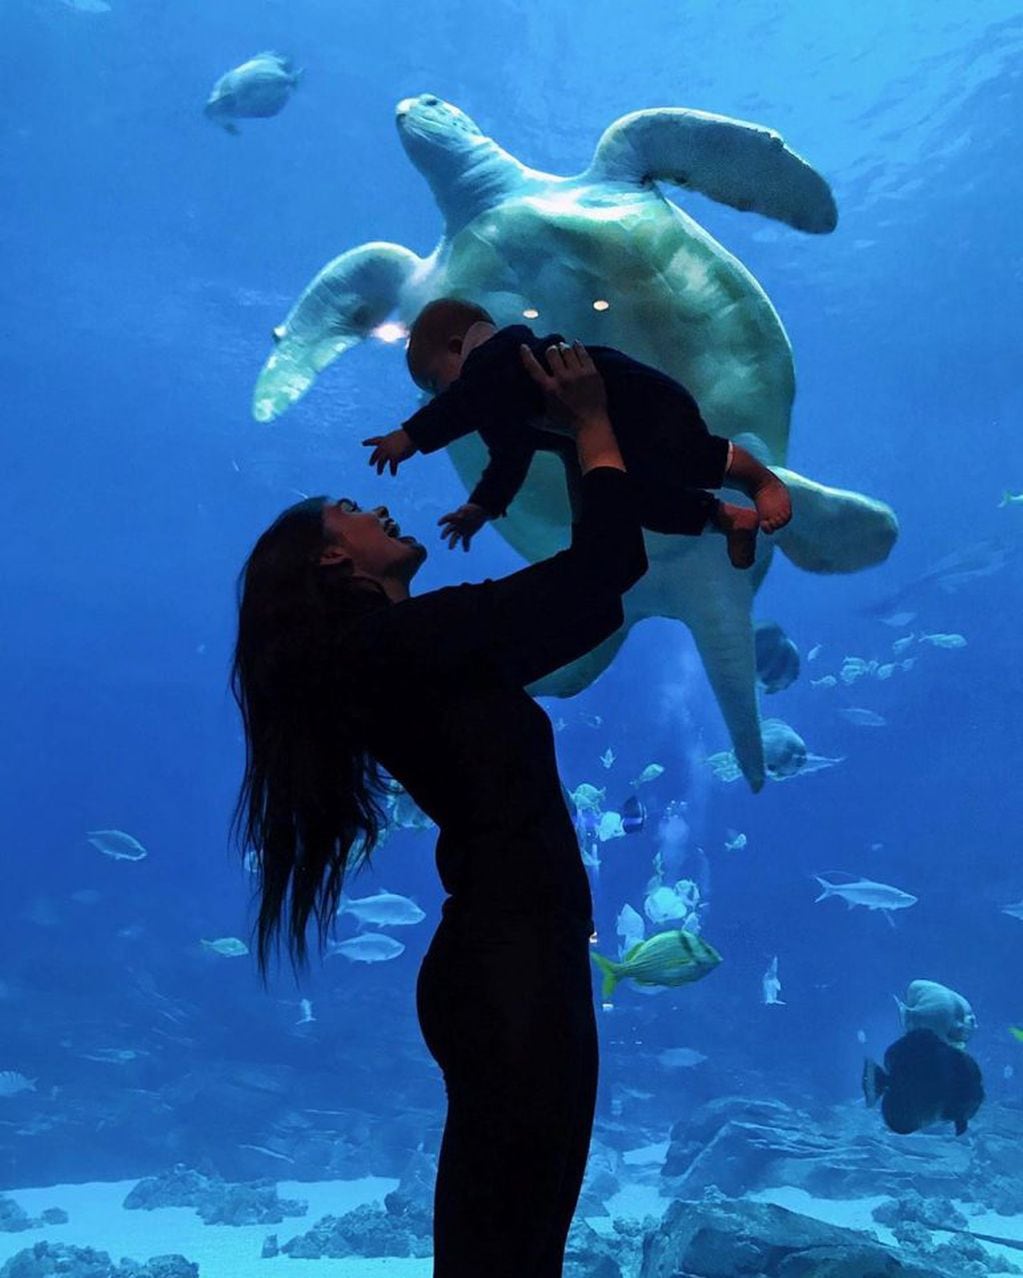 Eva de Dominici recibió fuertes críticas por haber fotografiado a su hijo en un acuario